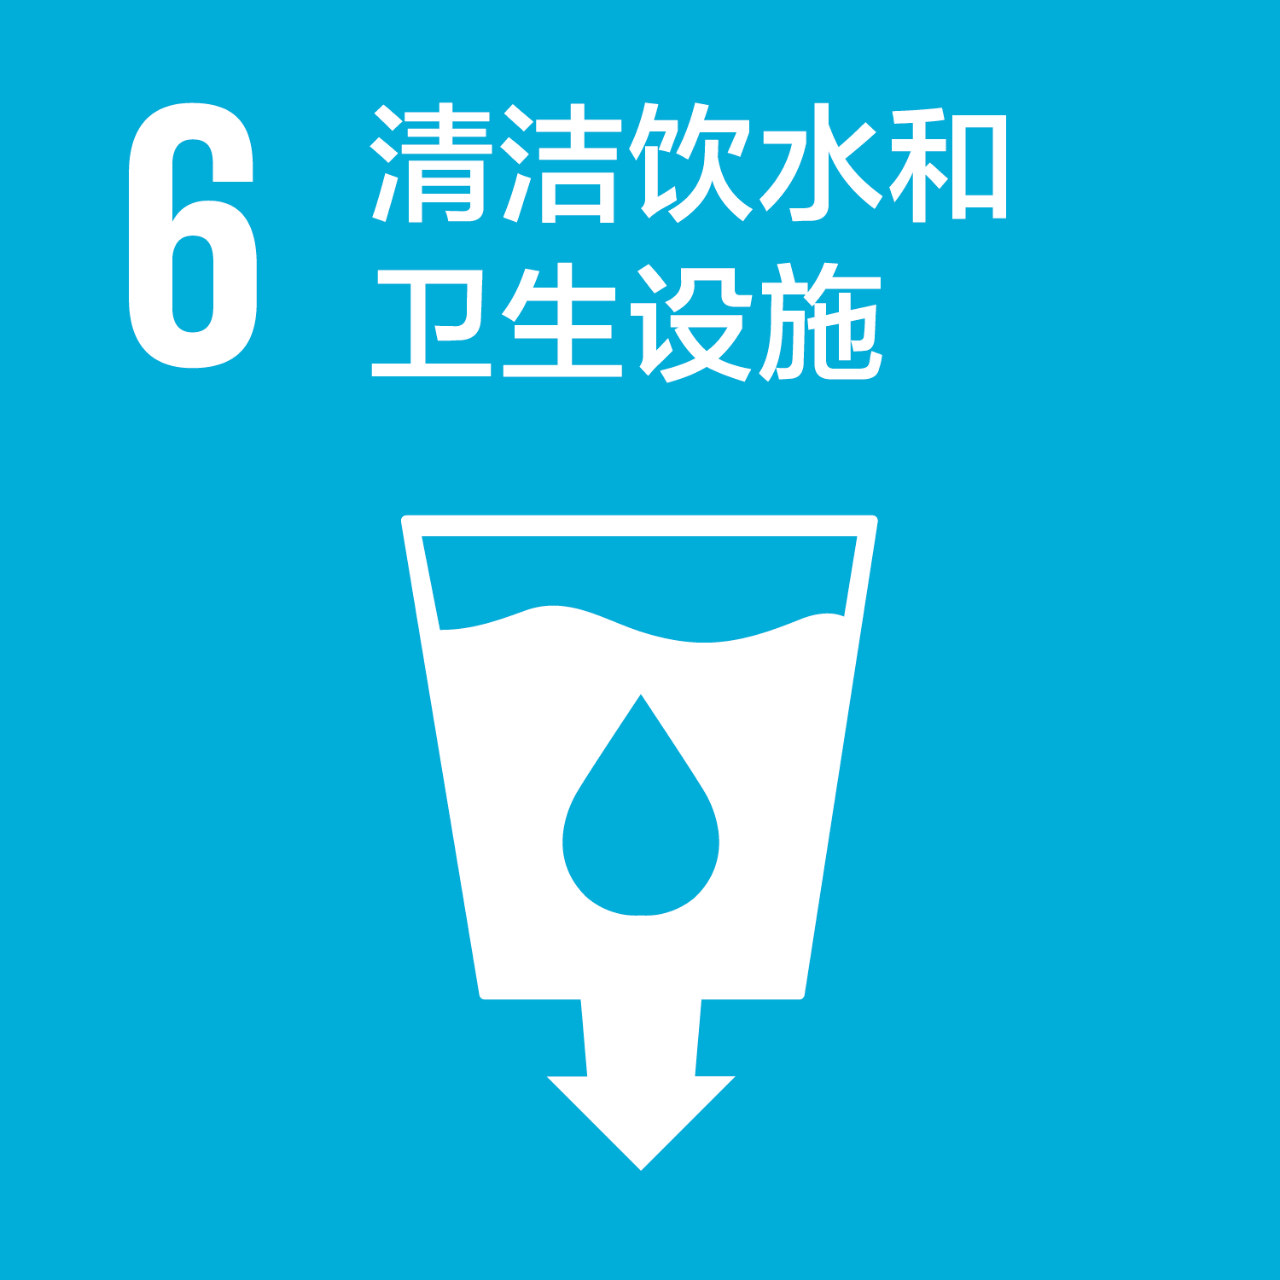 SDG6 chn.jpg